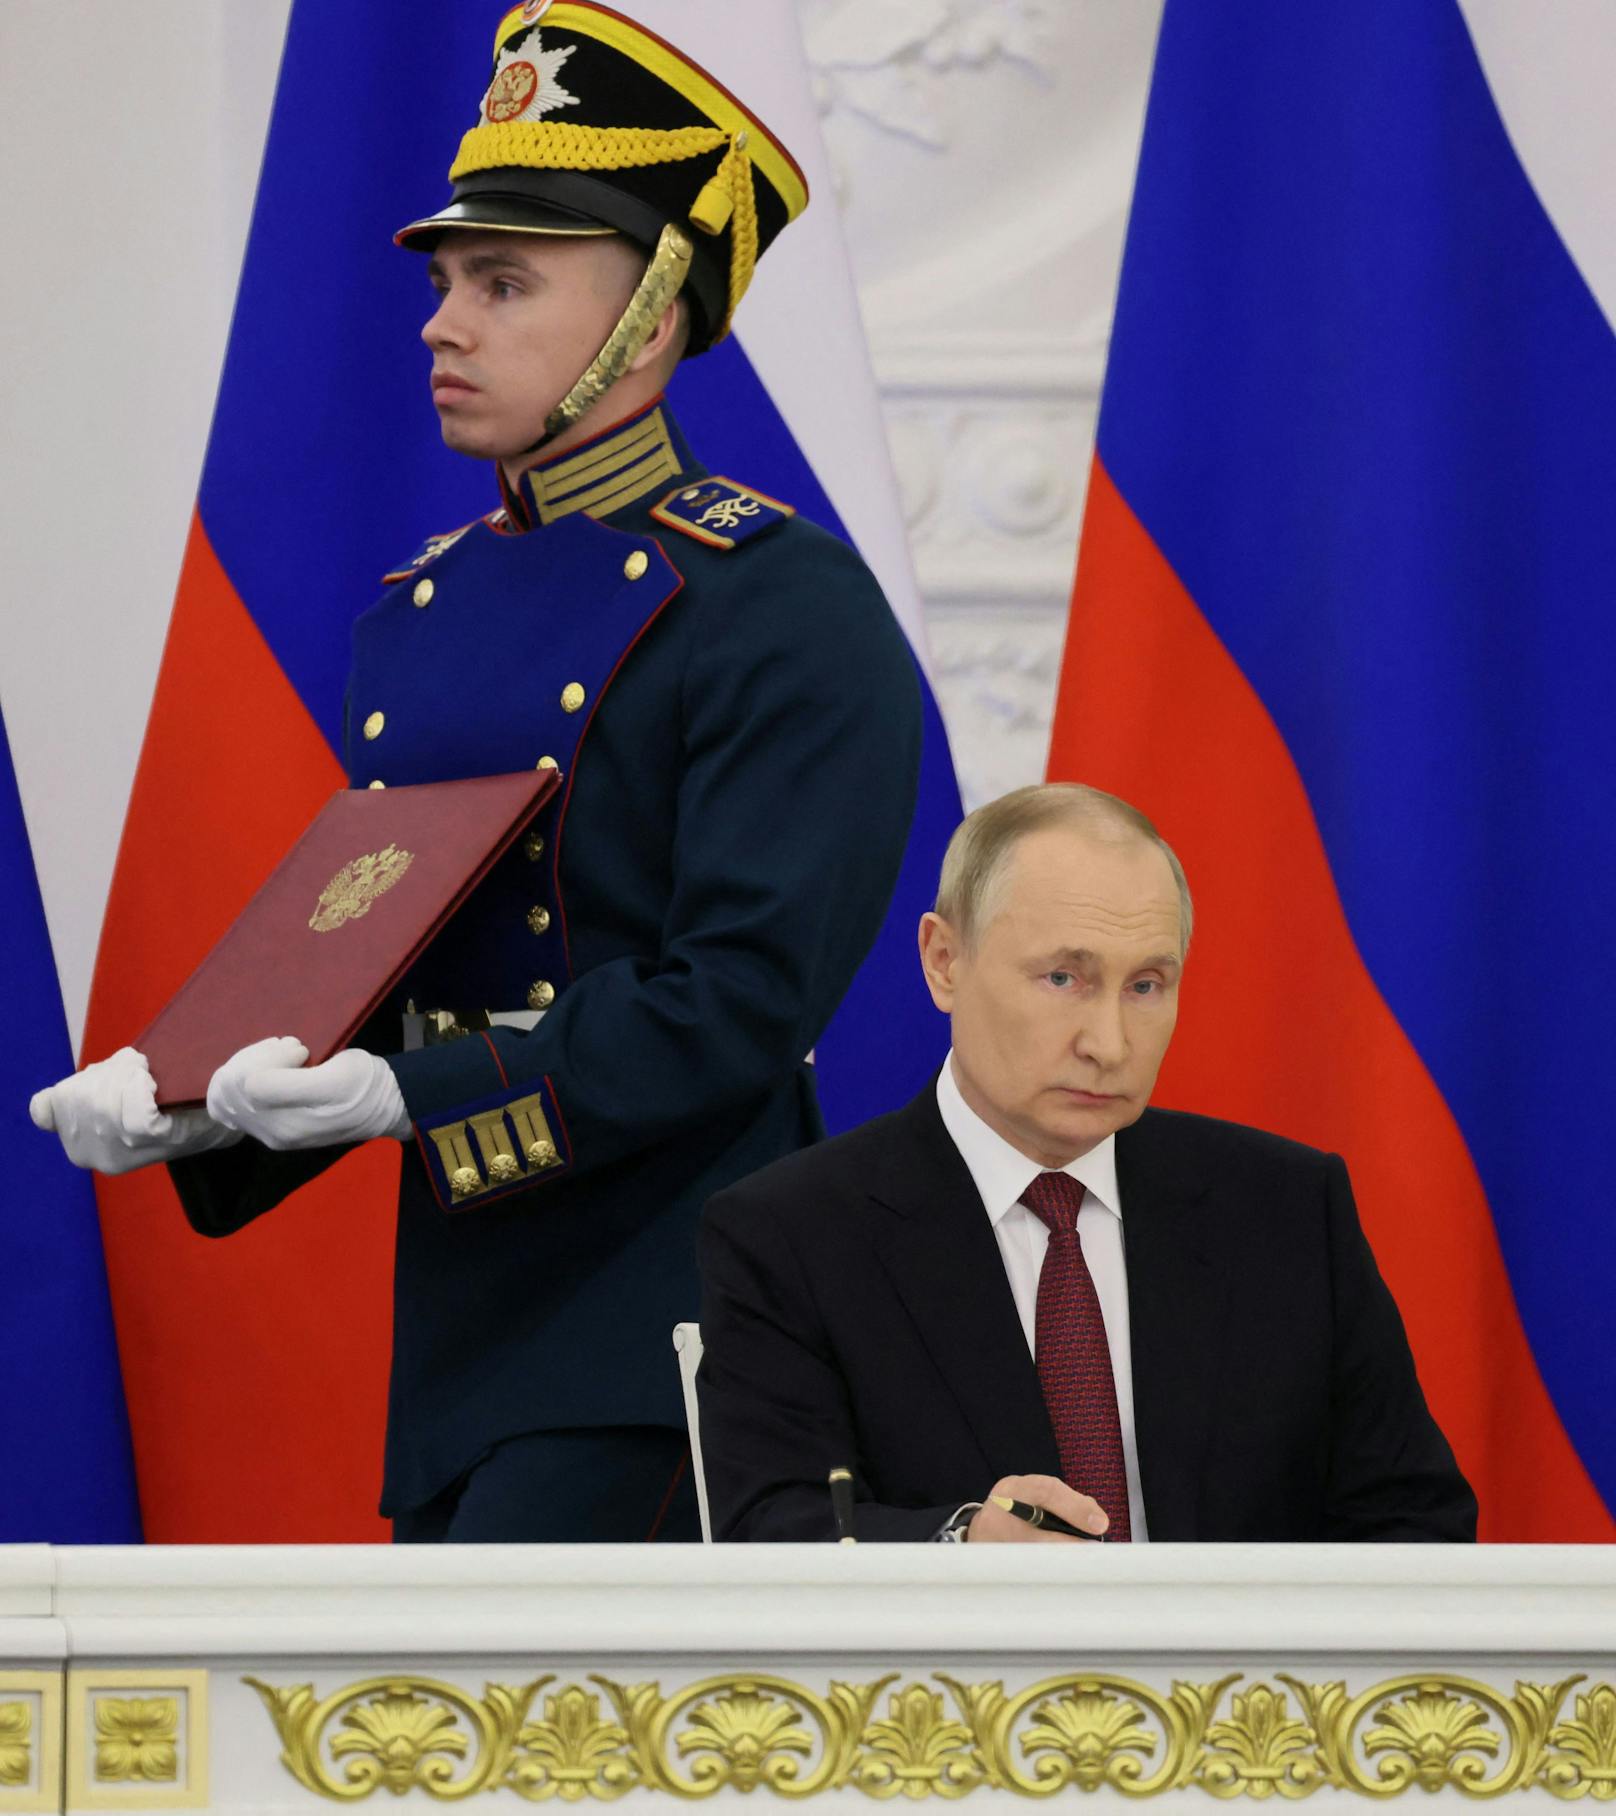 Putin nimmt abschließend noch einmal auf die Entscheidung der Bevölkerung in der Ostukraine Bezug. "Die Wahrheit ist auf unserer Seite."